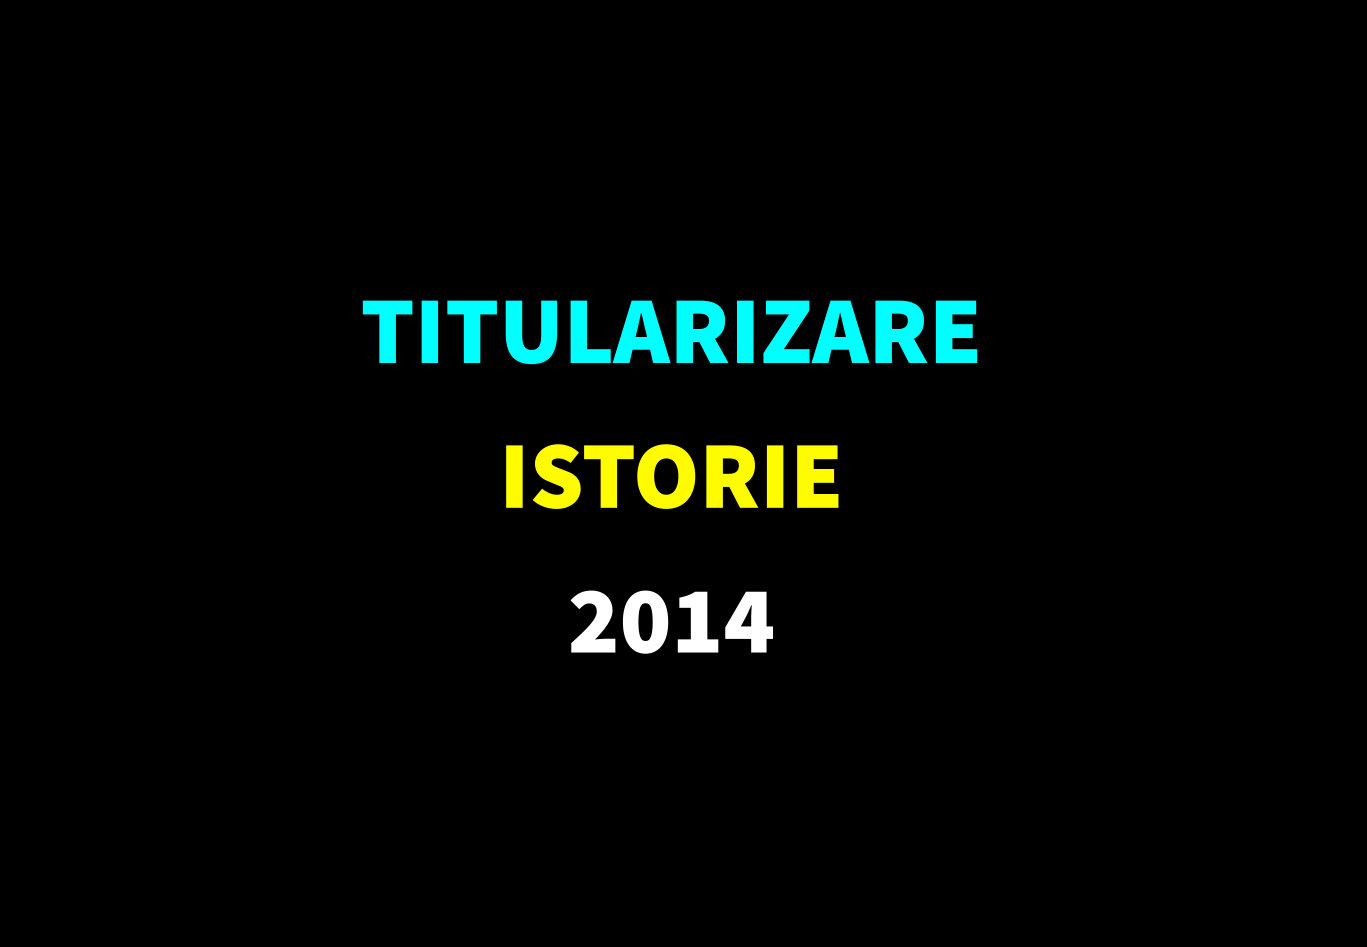 Titularizare istorie 2014